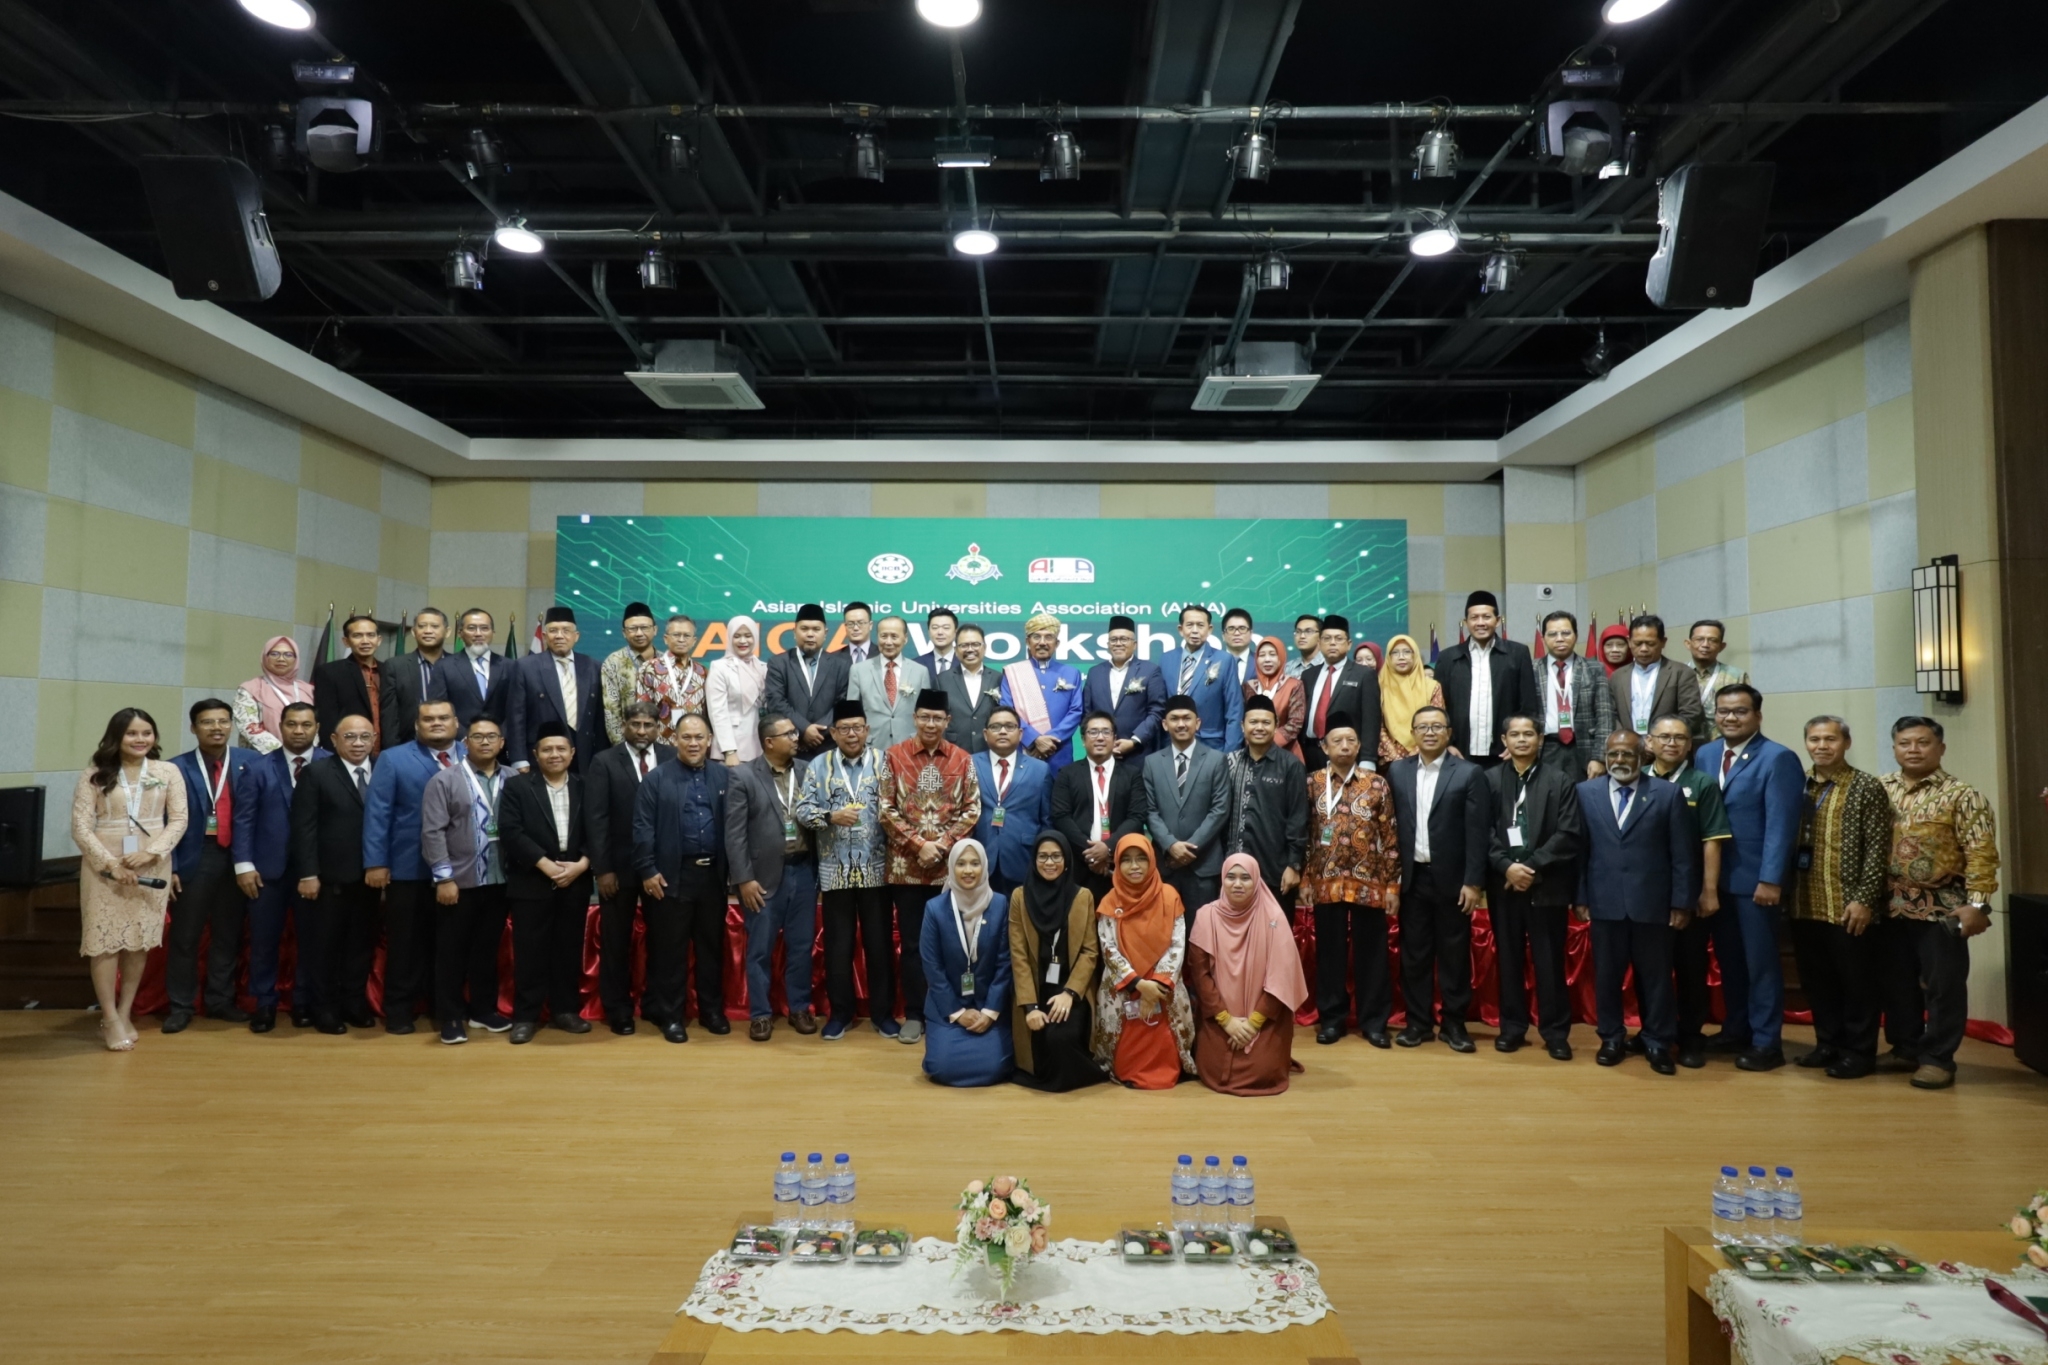 ม.เกริกจัดใหญ่ ประชุมสมาคมมหาวิทยาลัยมุสลิมแห่งเอเชียและการจัดประชุมวิชาการระดับนานาชาติ ครั้งที่ 1